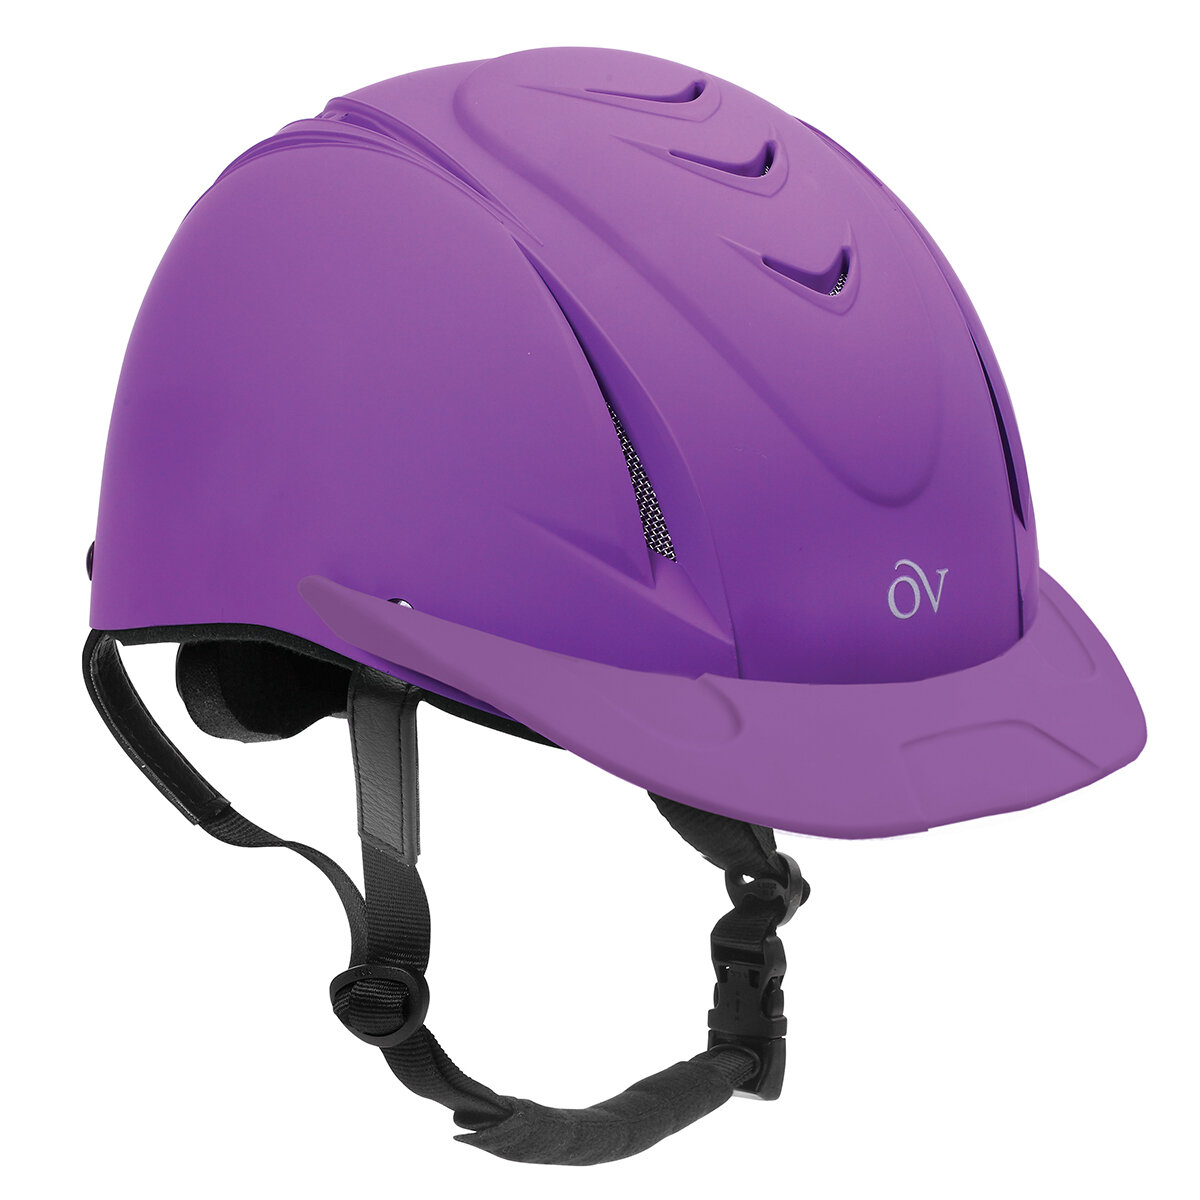 Matt Black IRH Equi-Pro Helmet Small/Medium